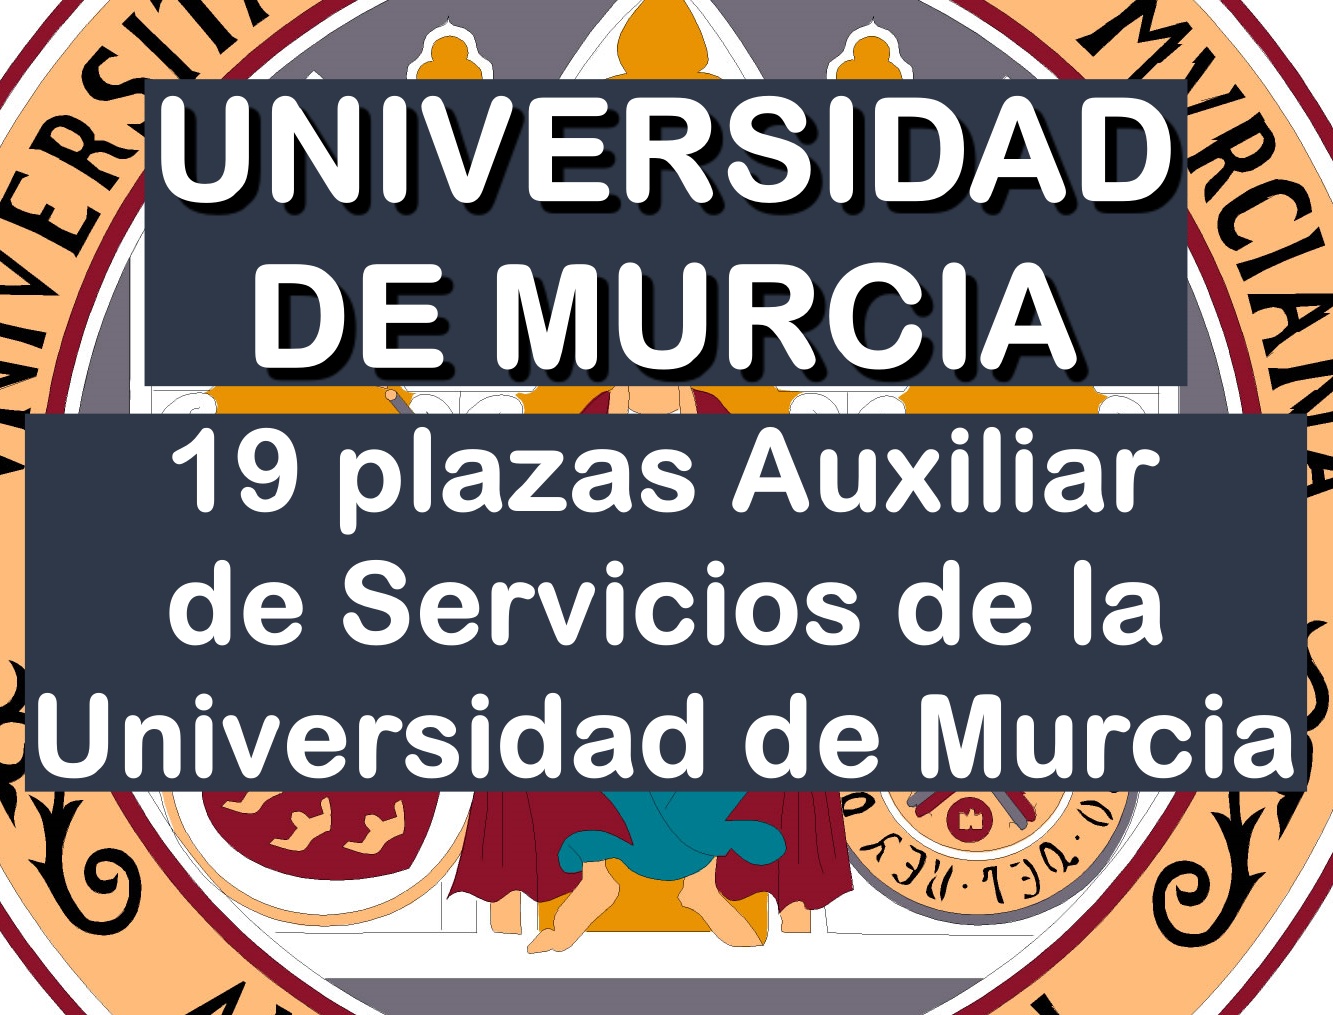 19 plazas Auxiliar de Servicios de la Universidad de Murcia